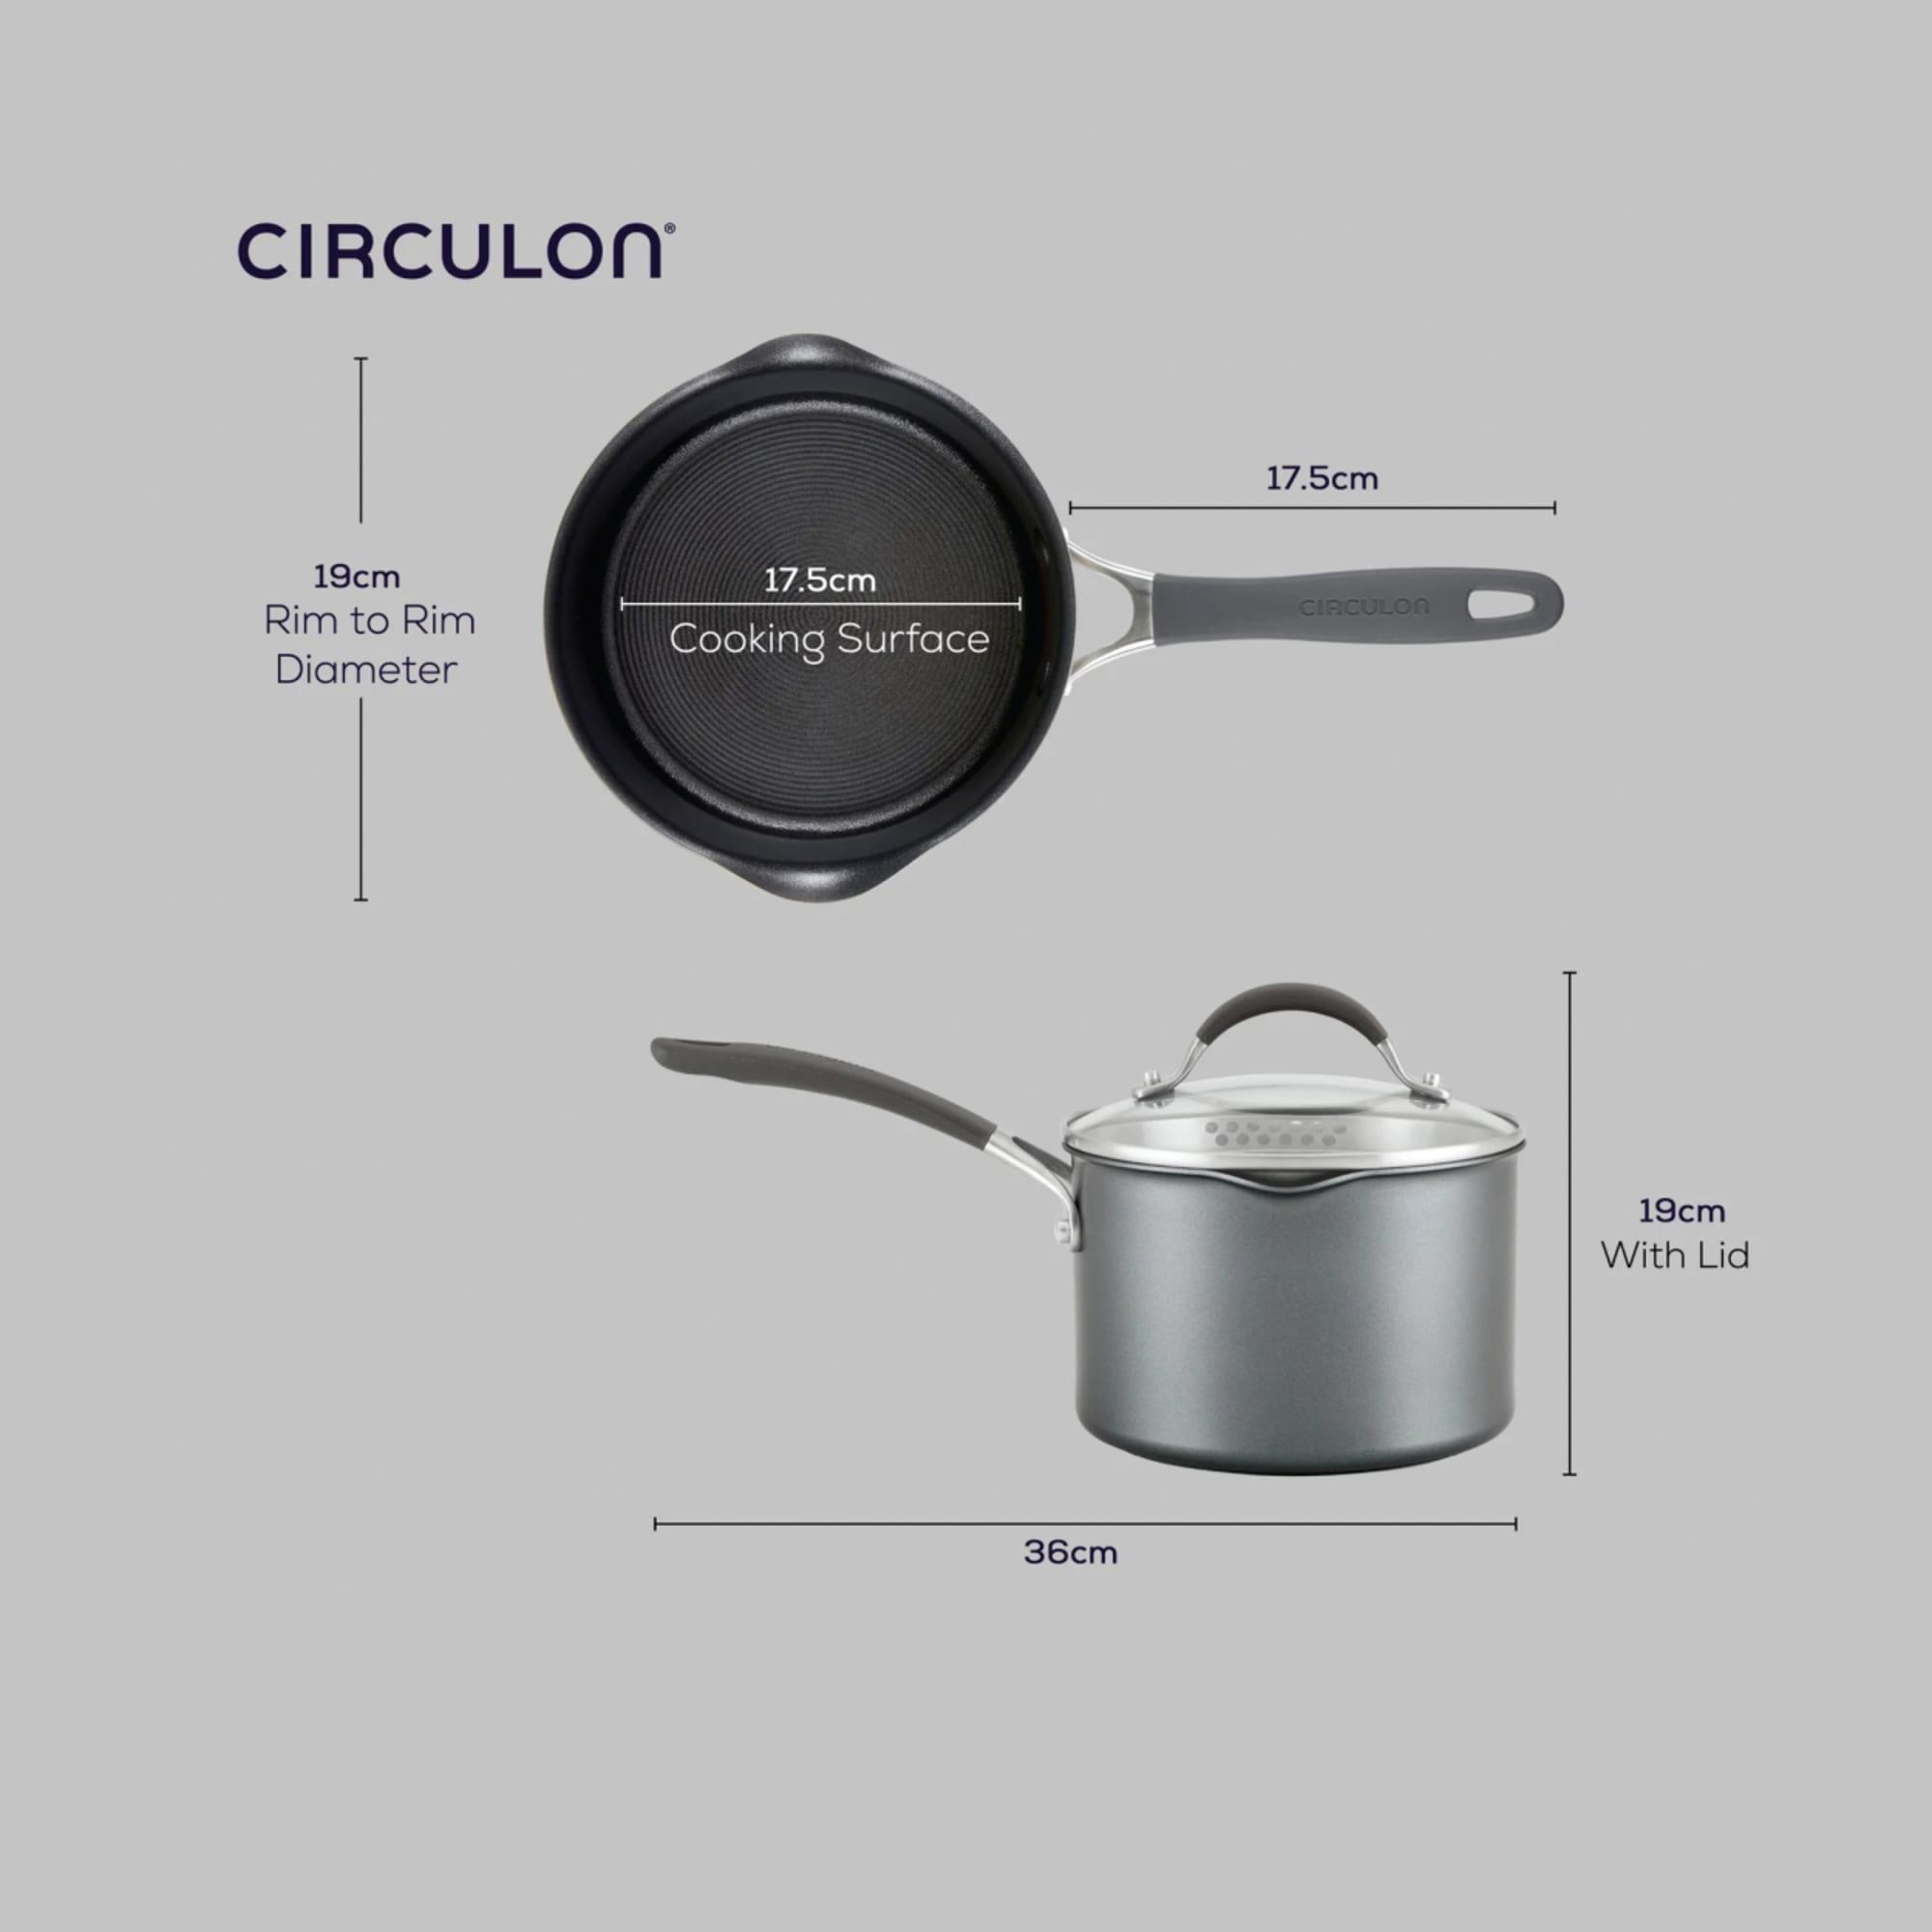 Circulon ScratchDefense Non Stick Covered Saucepan 18cm - 2.8L Image 8